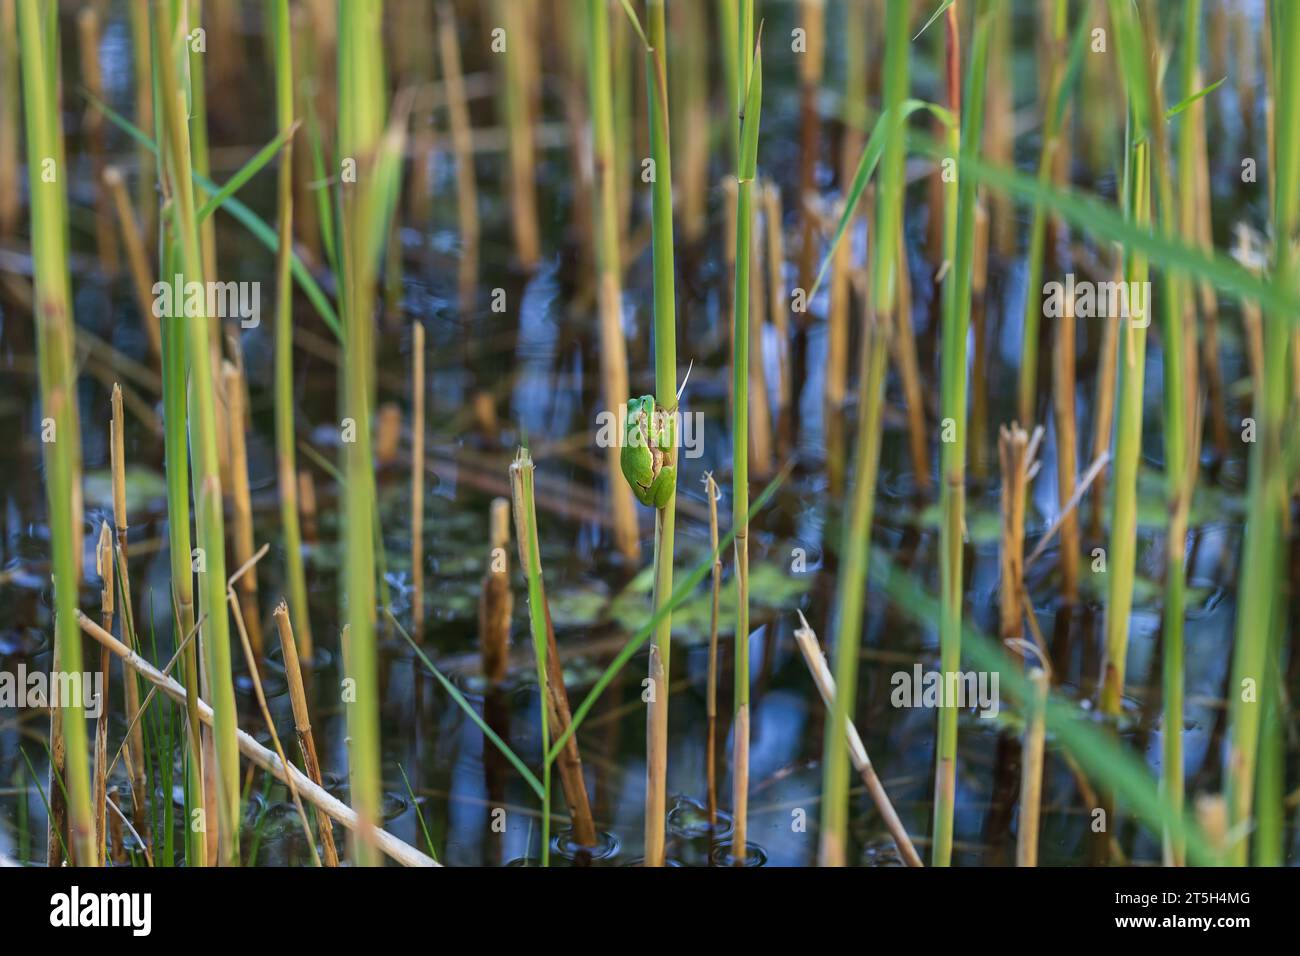 Grenouille d'arbre - Hyla arborea - grenouille verte assise sur une lame d'herbe sèche.Photo a beau bokeh. Banque D'Images